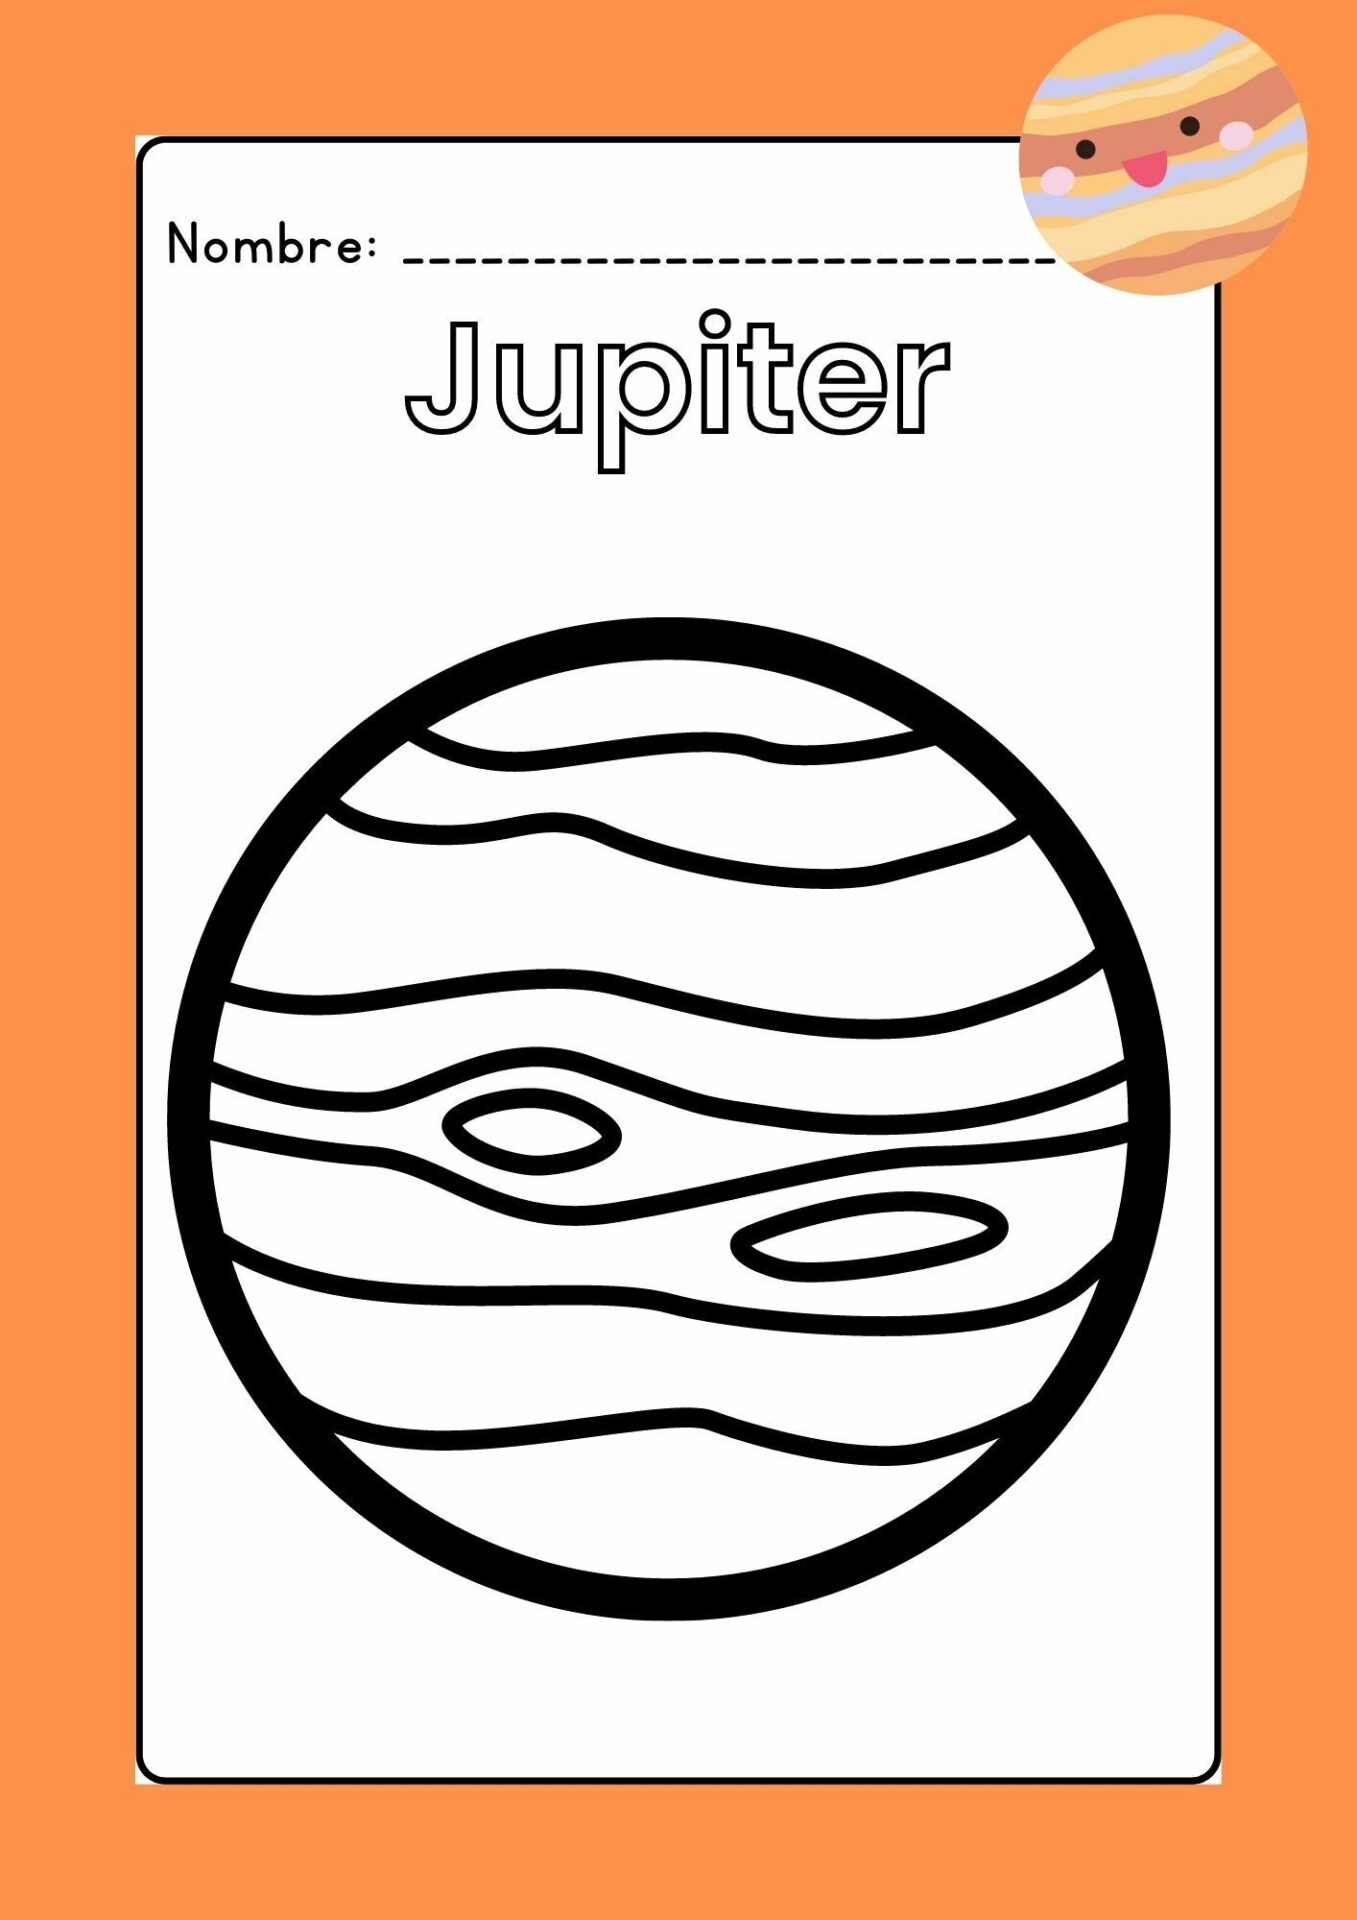 Imagen Jupiter